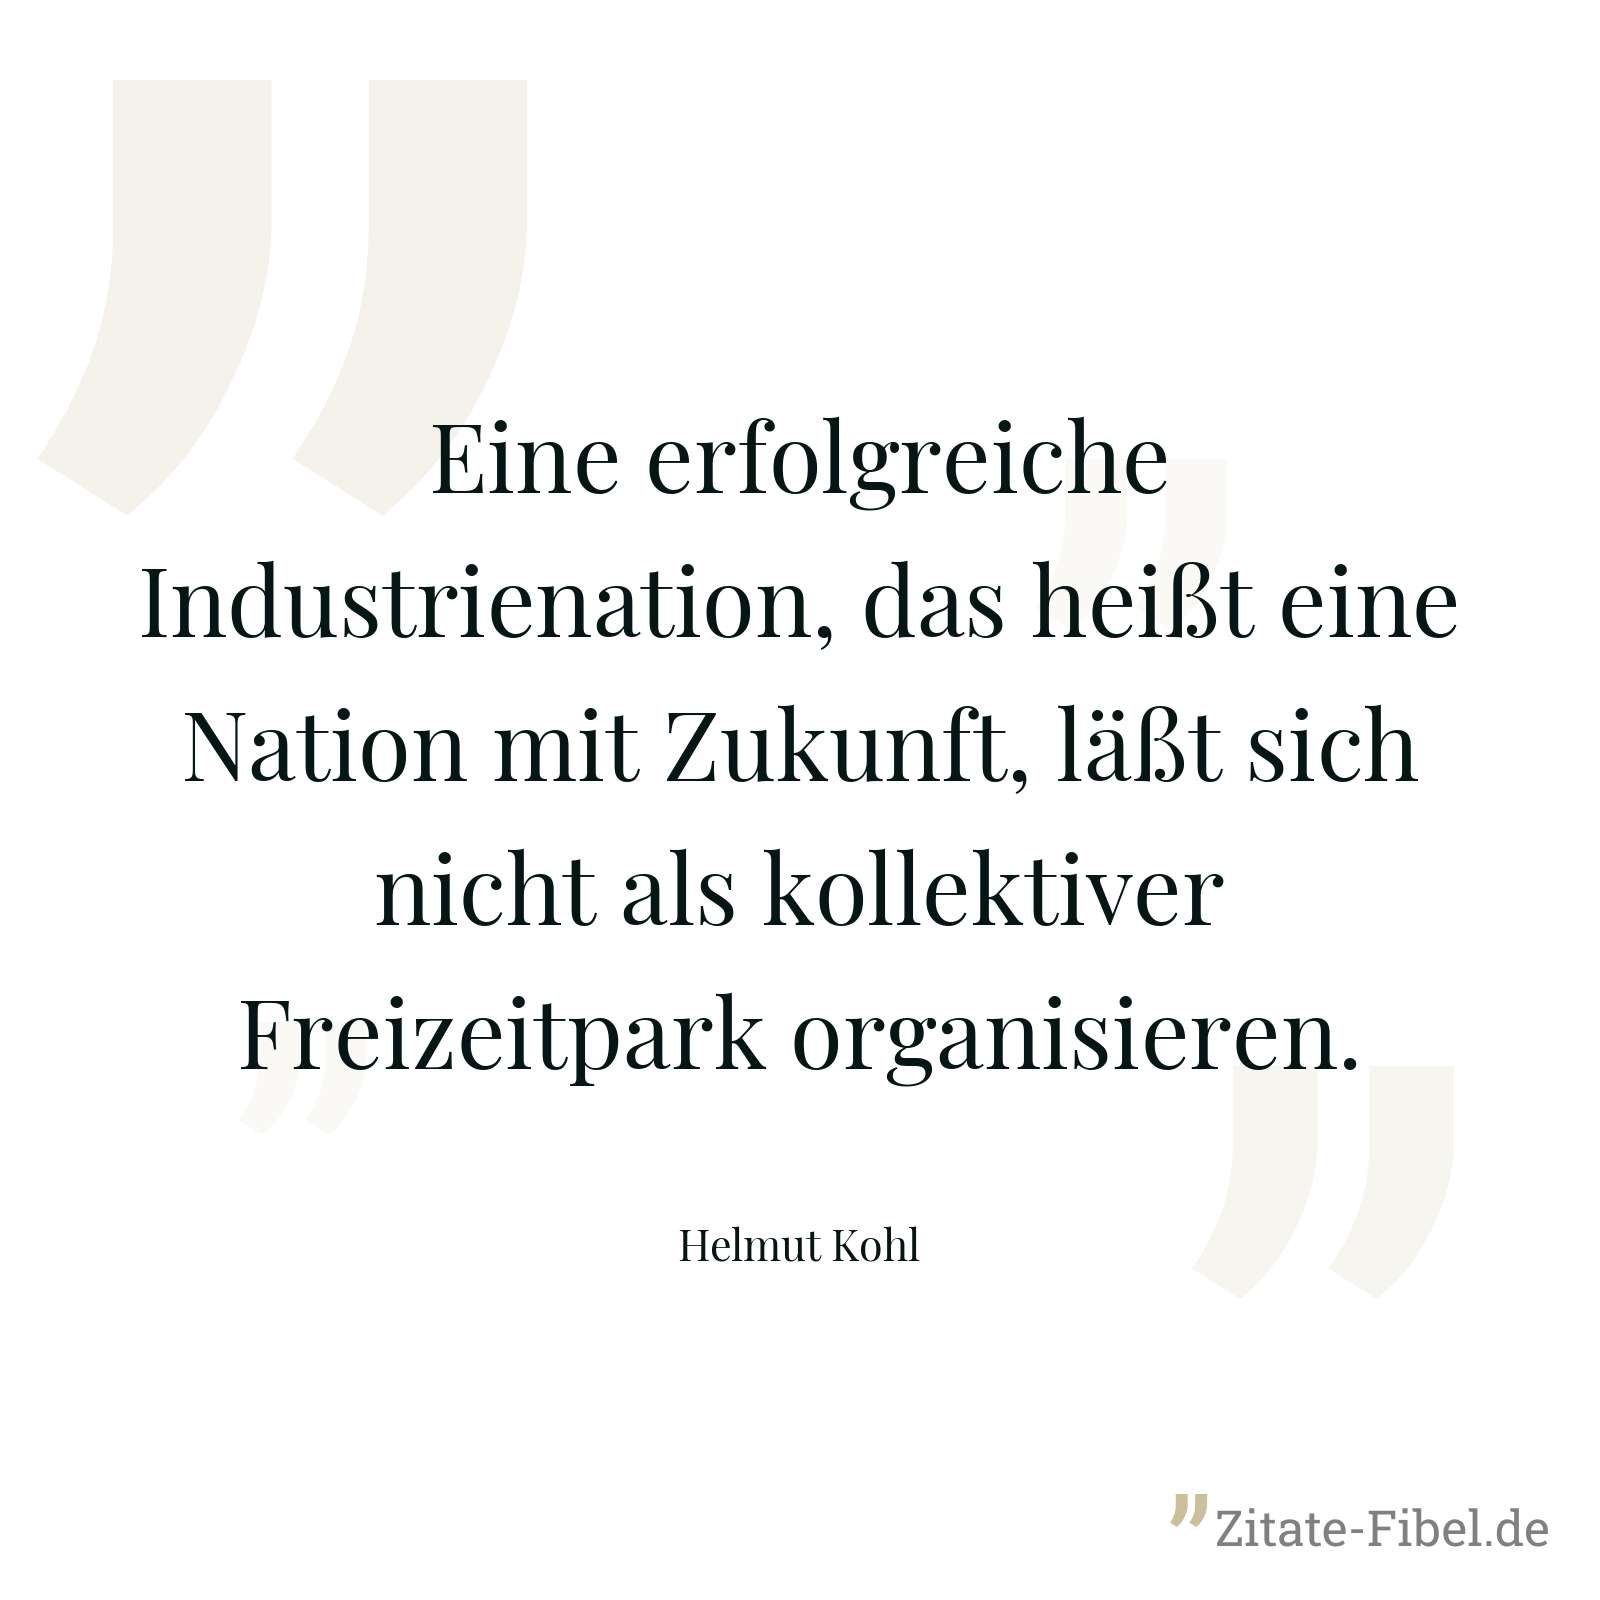 Eine erfolgreiche Industrienation, das heißt eine Nation mit Zukunft, läßt sich nicht als kollektiver Freizeitpark organisieren. - Helmut Kohl